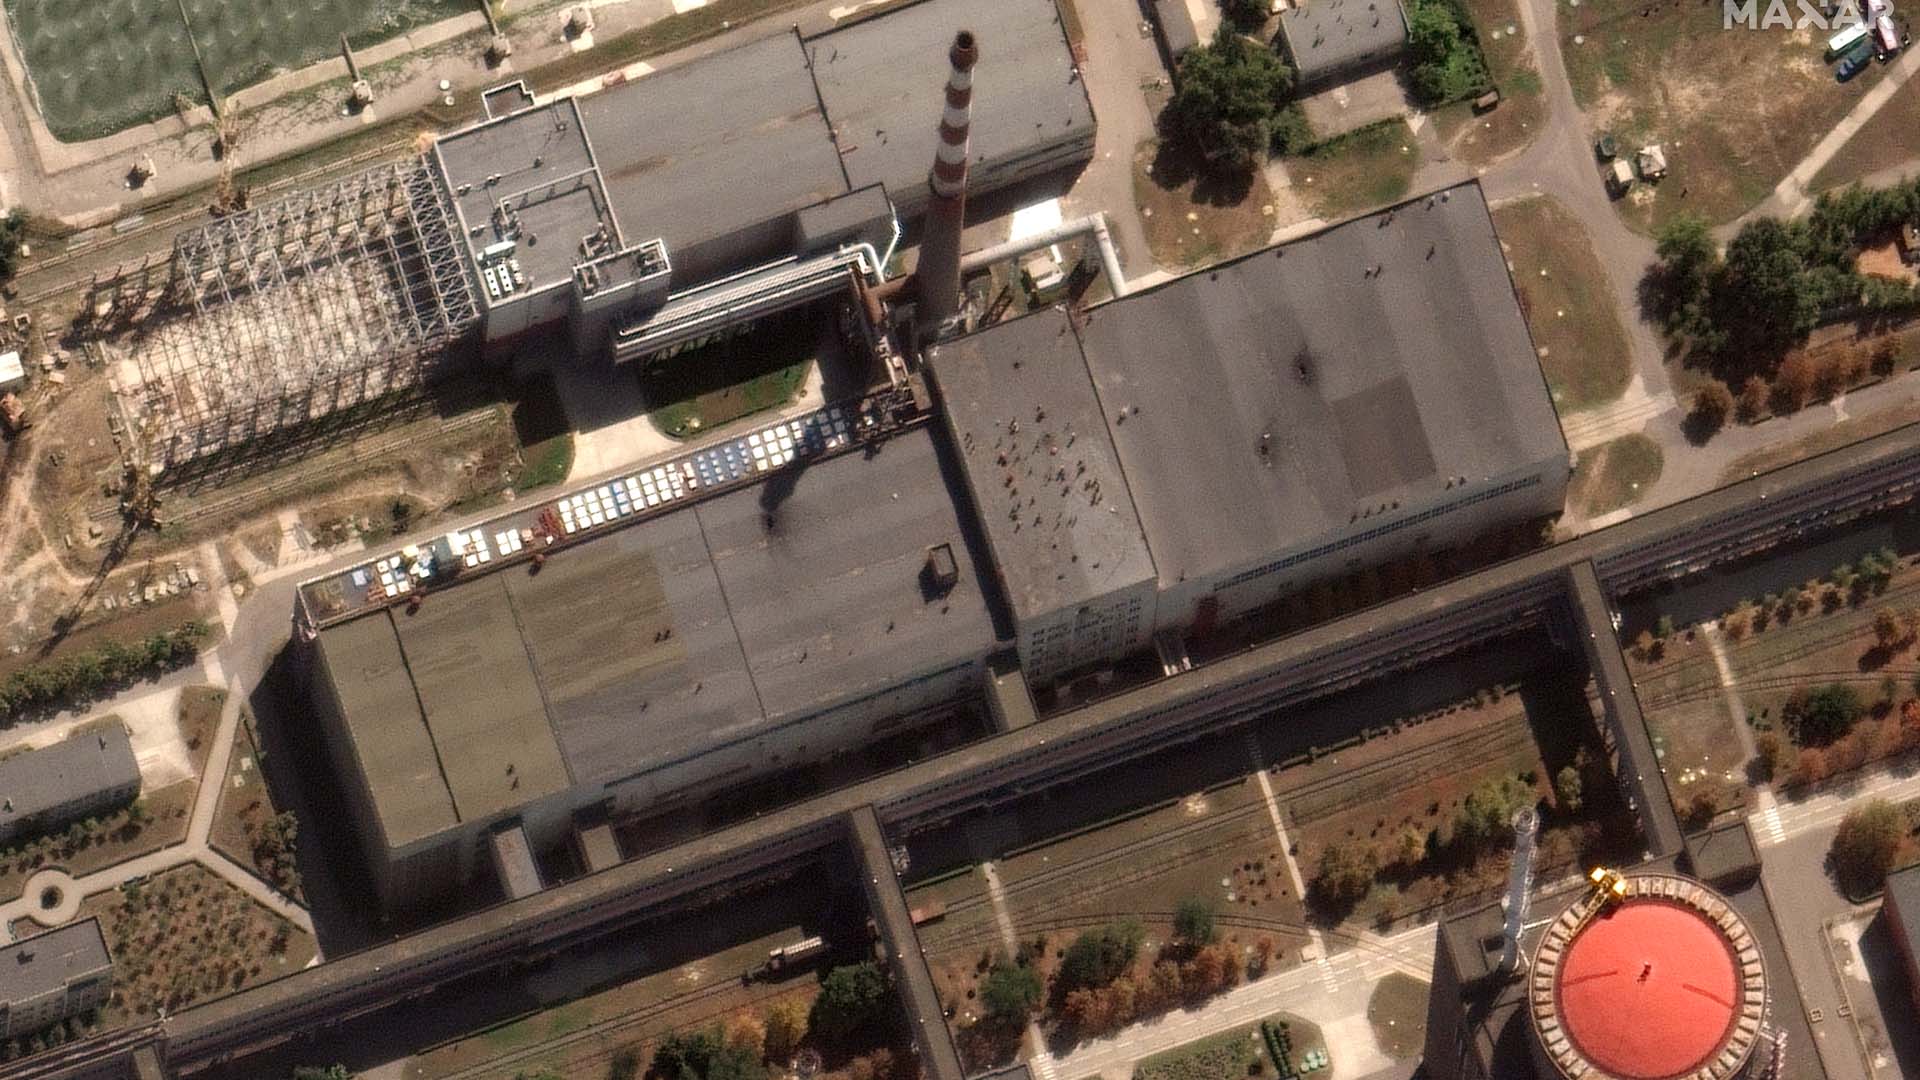 Cette image satellite fournie par Maxar Technologies montre les récents dommages causés au toit d'un bâtiment adjacent à plusieurs des réacteurs nucléaires de la centrale nucléaire de Zaporizhzhia, en Ukraine occupée par la Russie, le 29 août 2022.